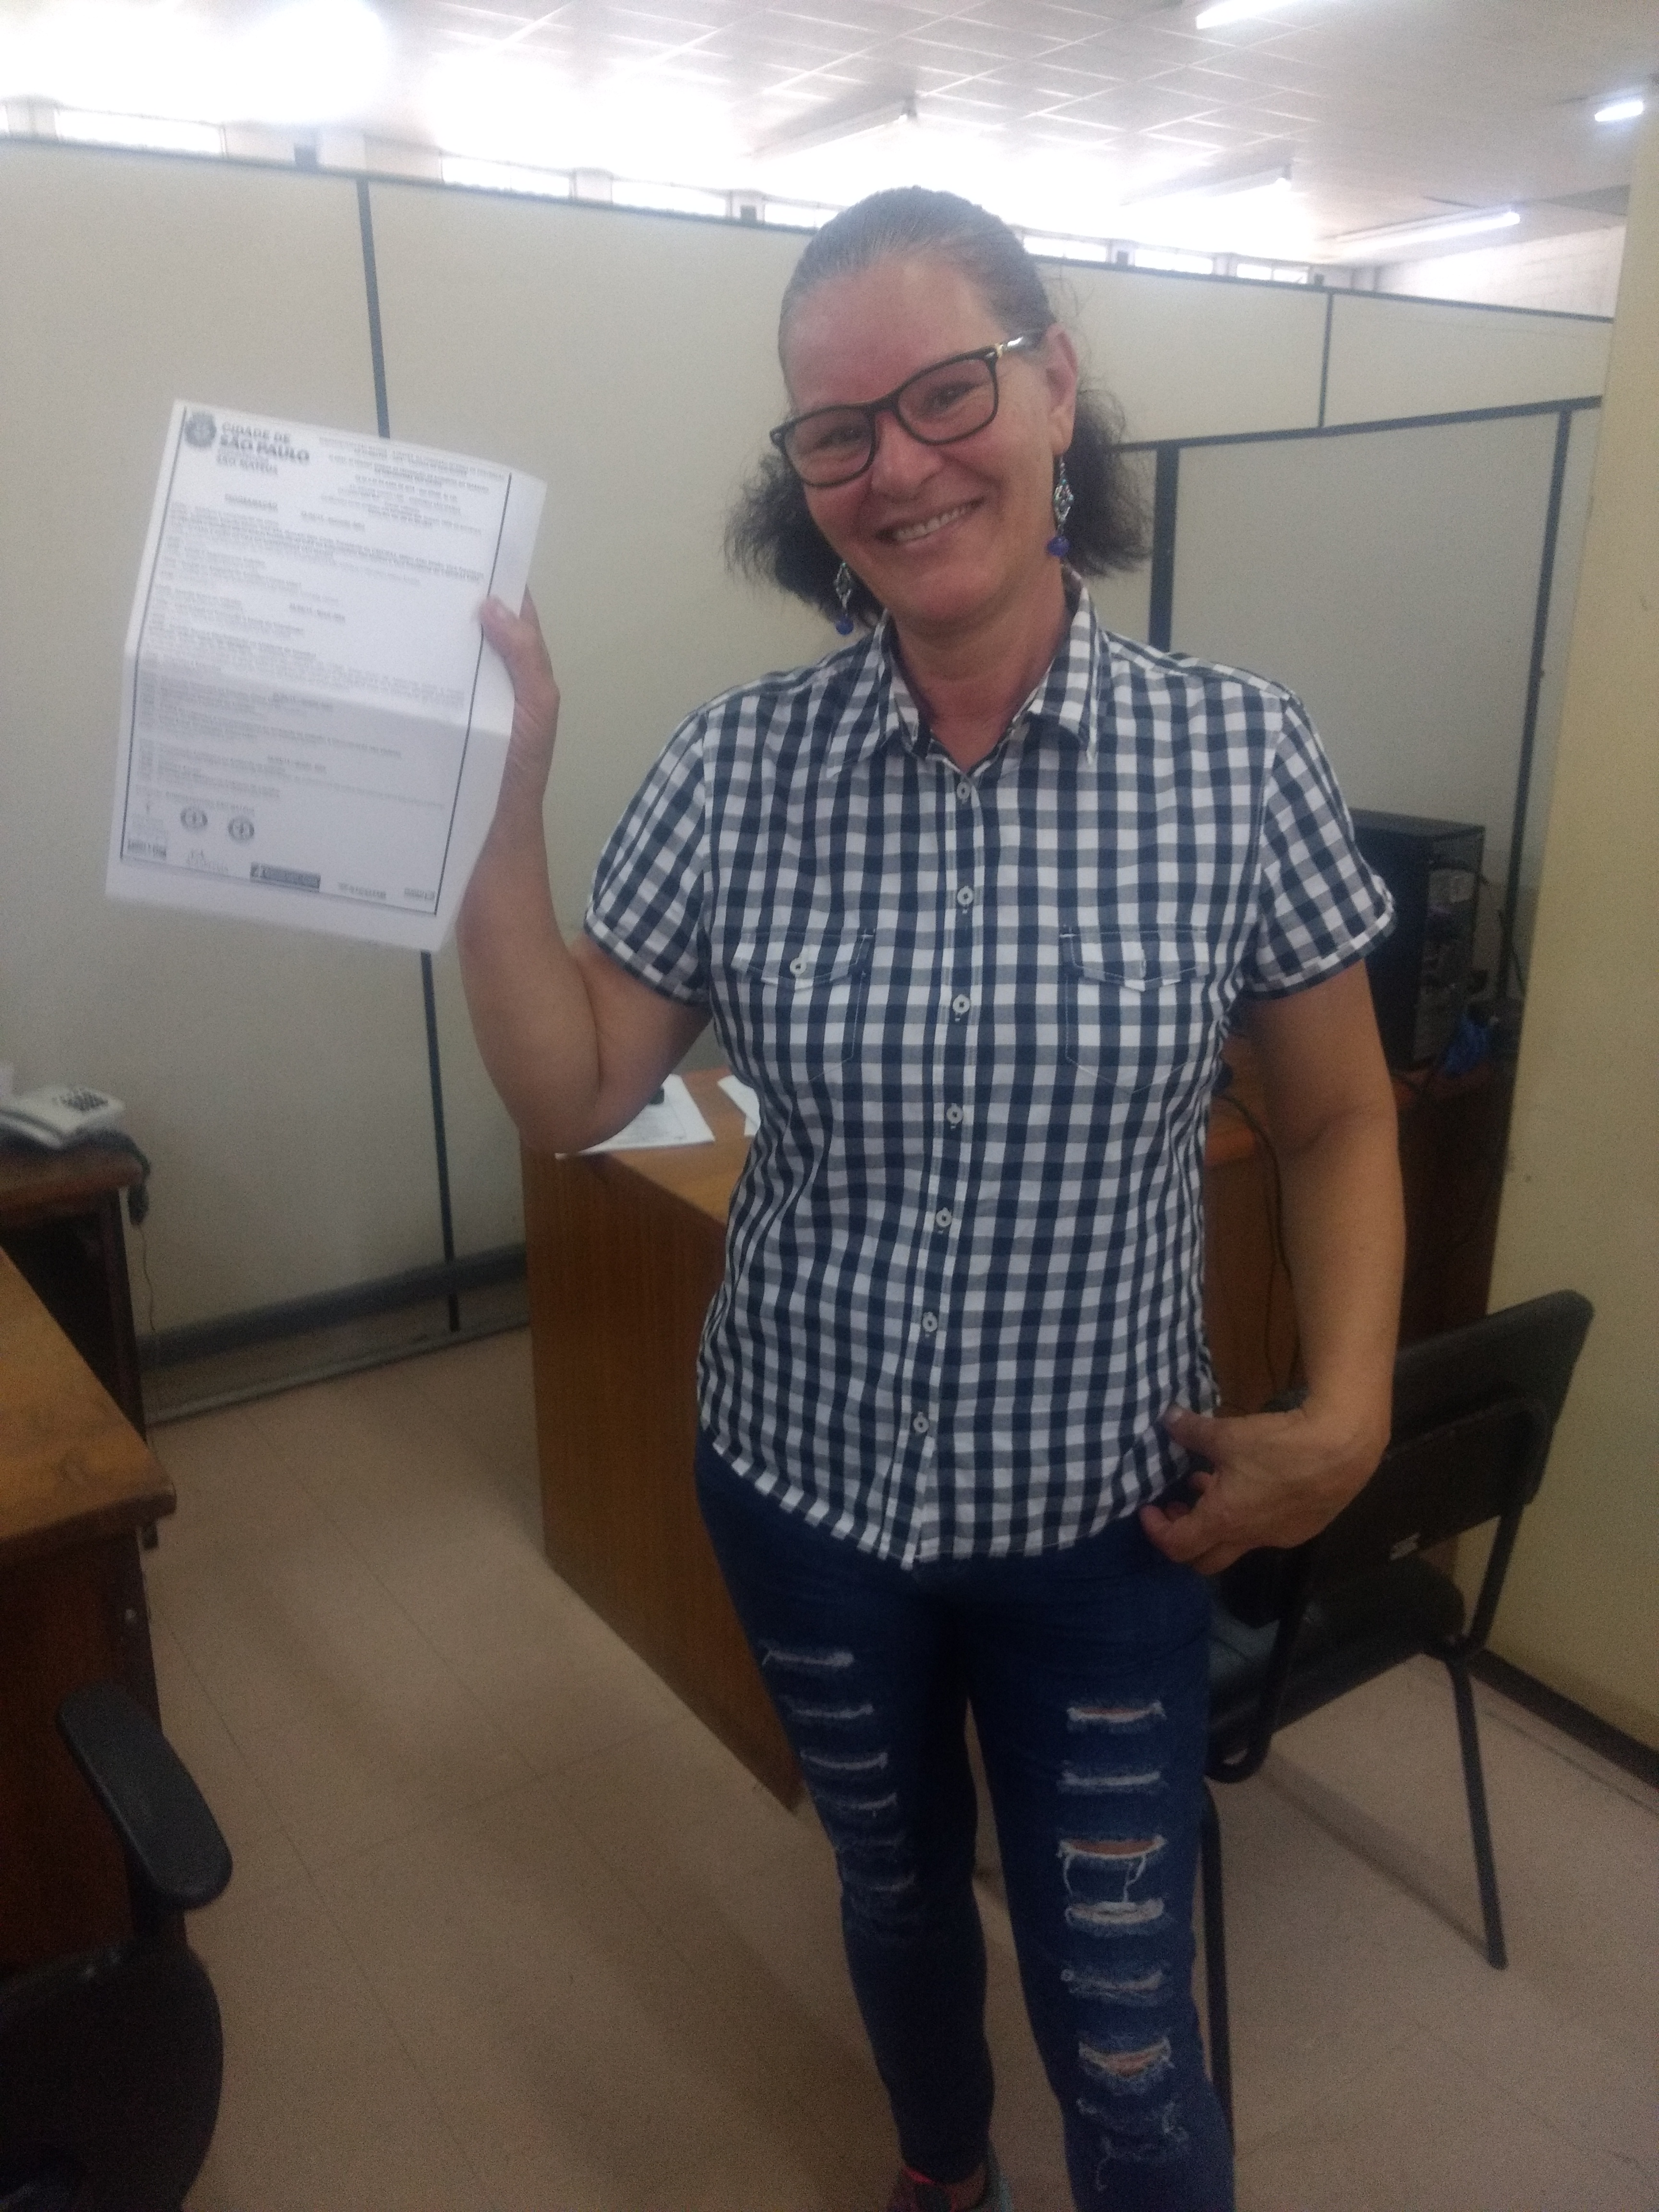 Maria Aparecida segura na mão direita um certificado da Prefeitura. Ela está de camisa quadriculada e calça jeans.